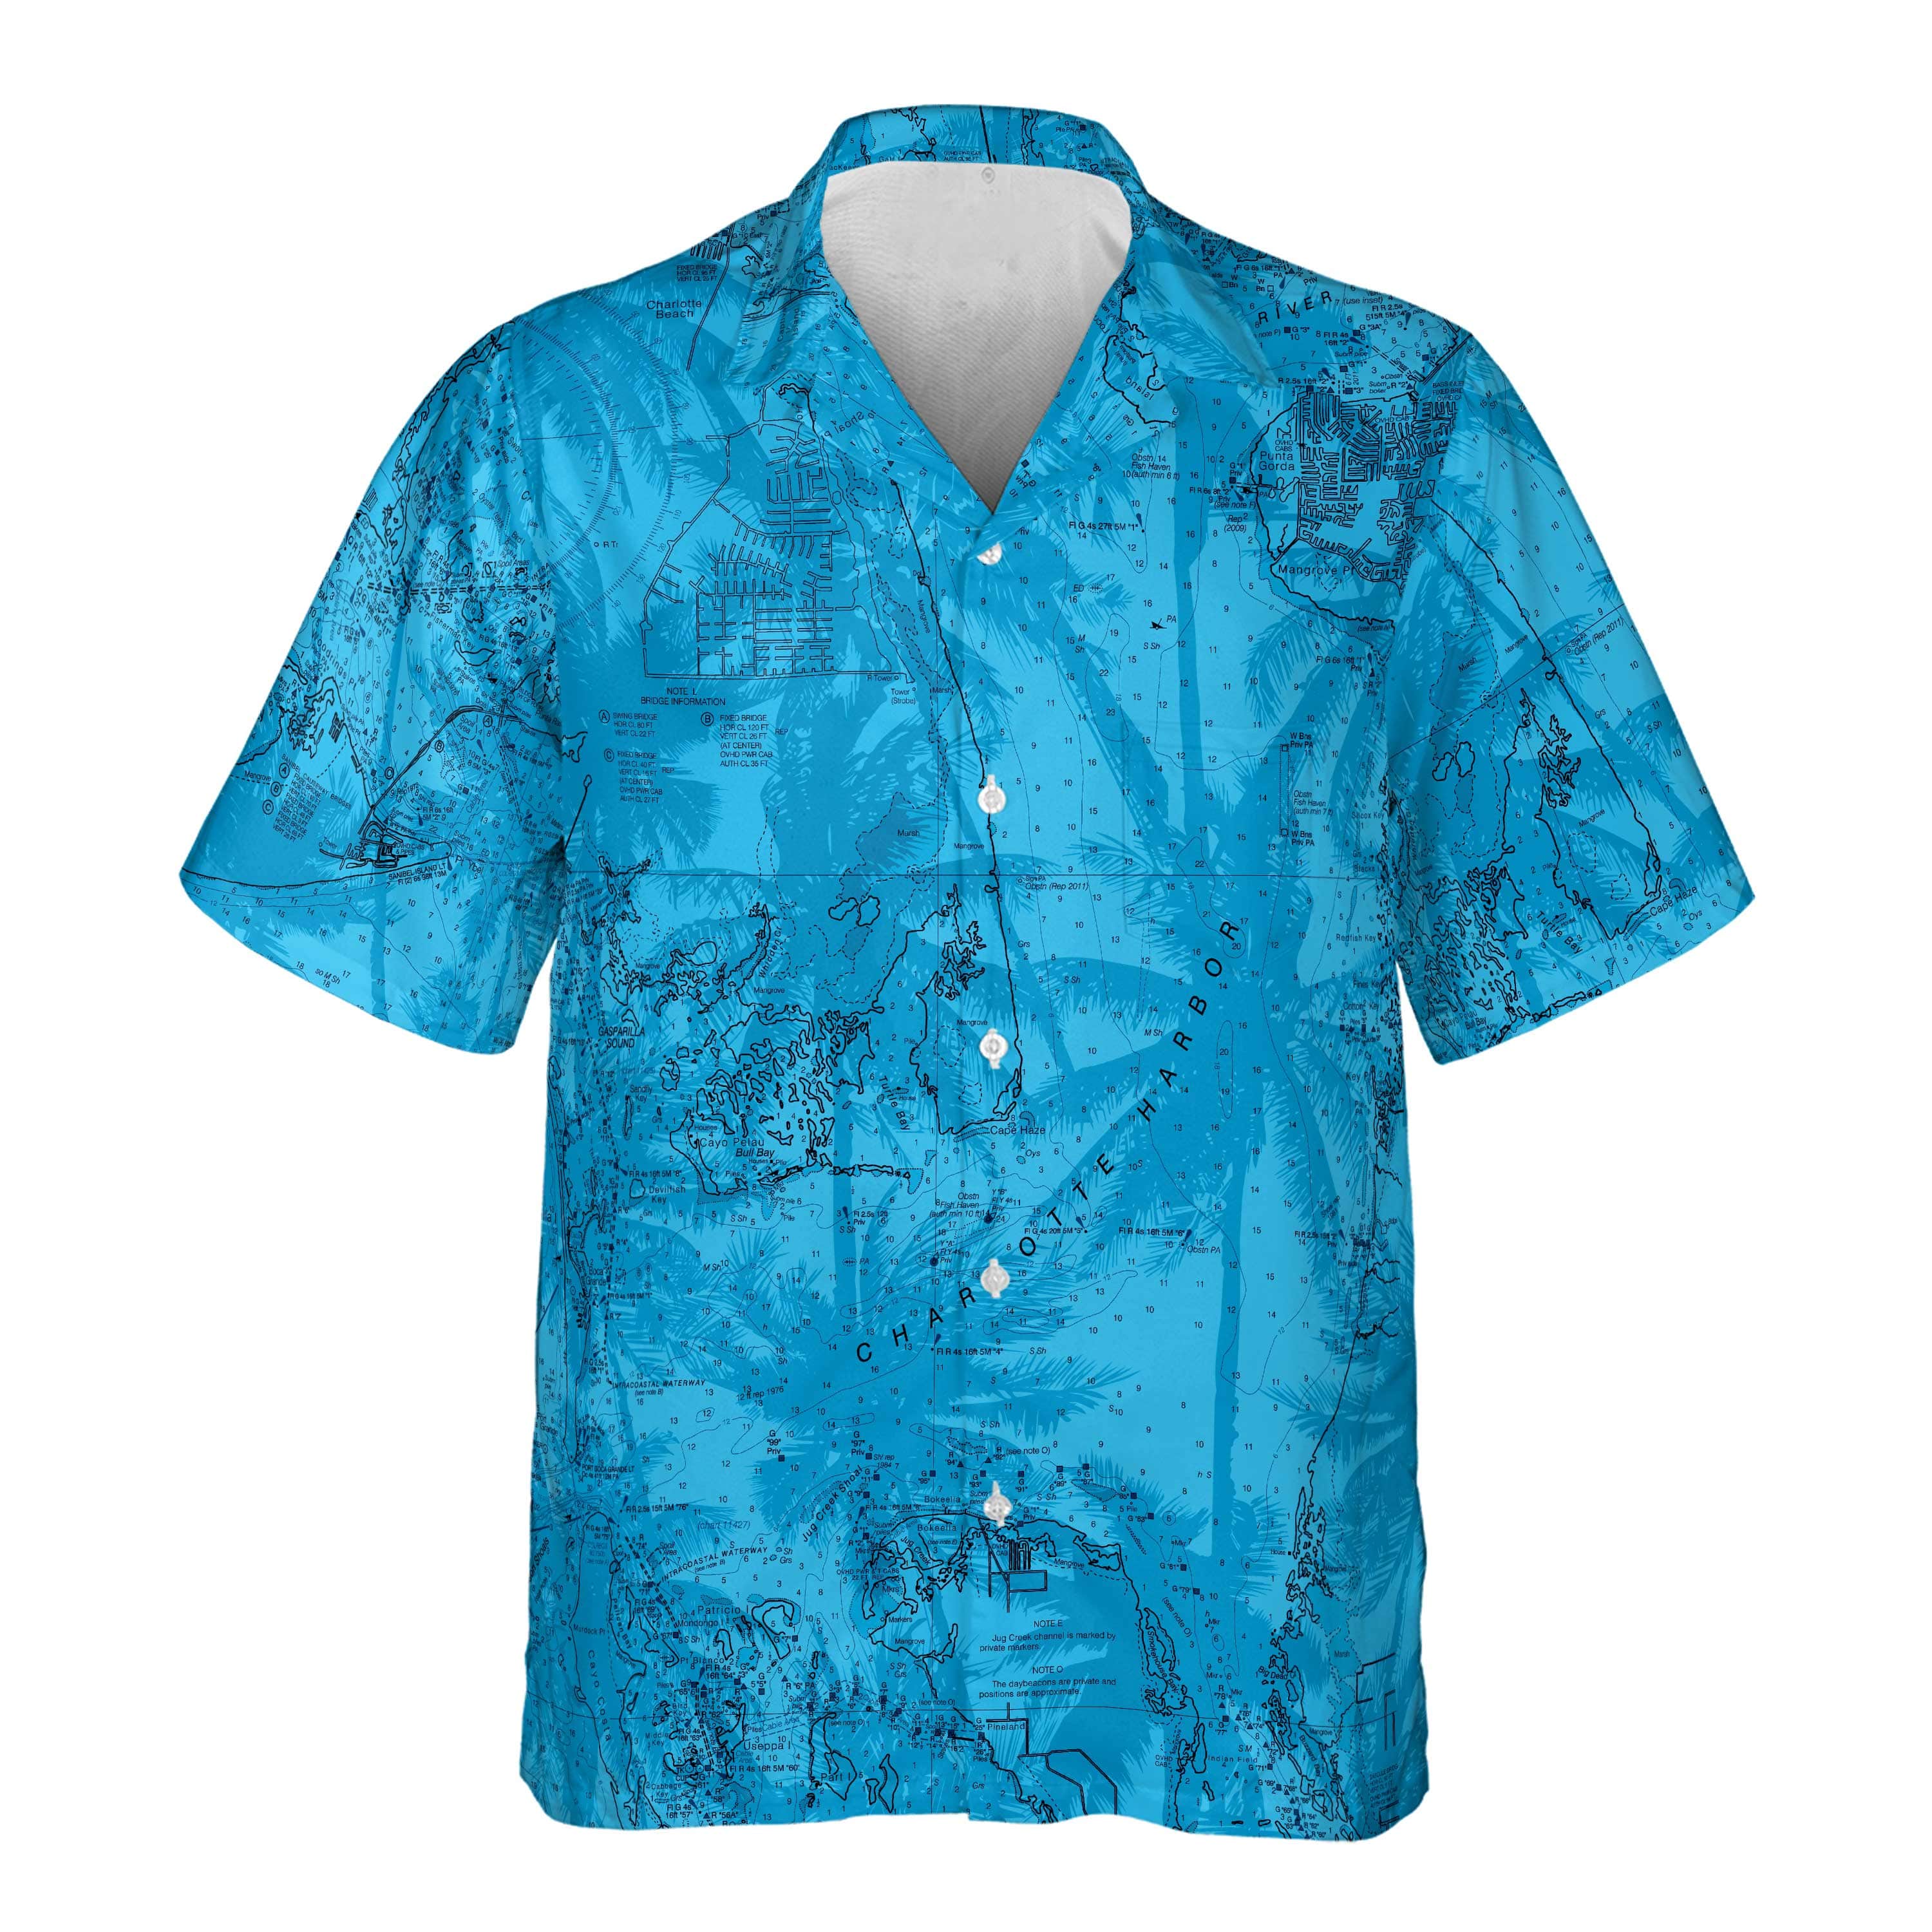 The Punta Gorda Blue Palms Pocket Shirt